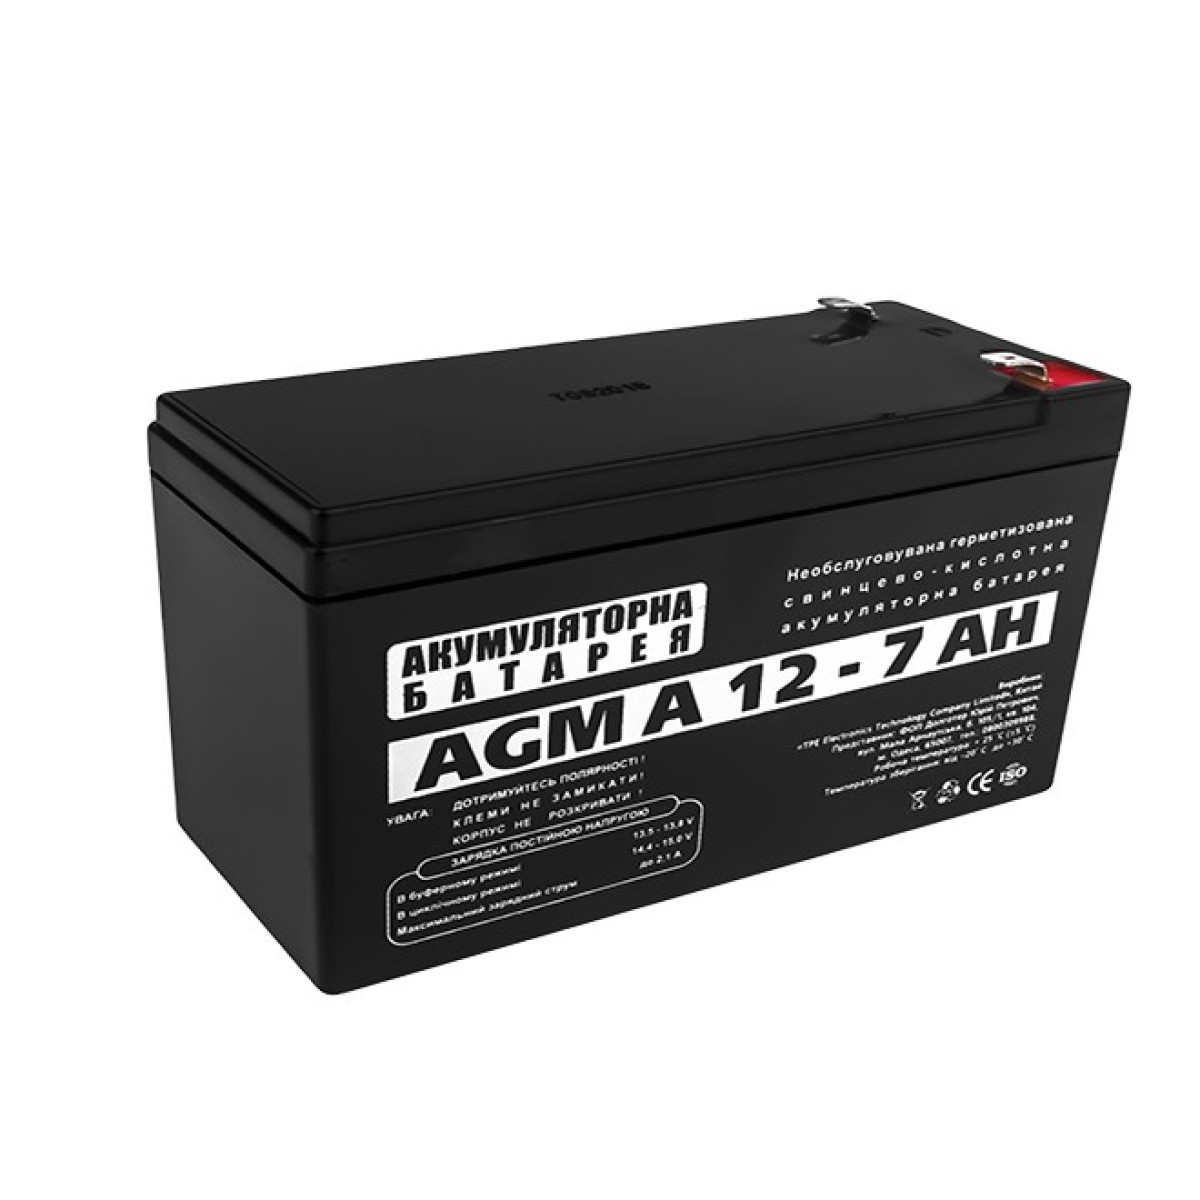 Акумуляторна батарея LogicPower AGM А 12 – 7 AH 256_256.jpg